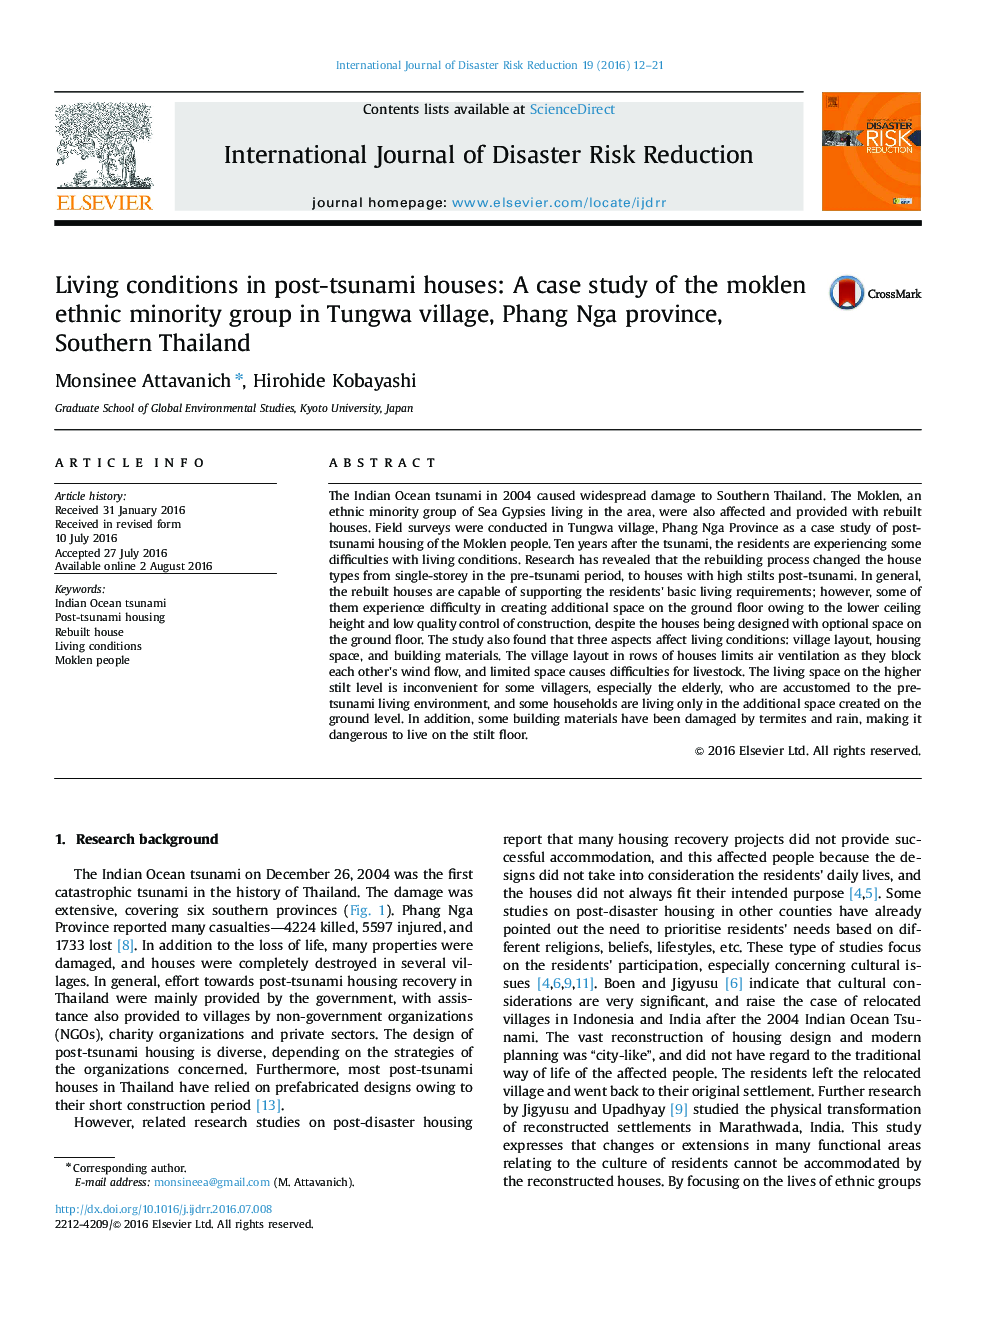 شرایط زندگی در خانه های بعد از سونامی: مطالعه موردی اقلیت مولوکن در روستای تانگوا، استان پنگ نگا، جنوب تایلند 